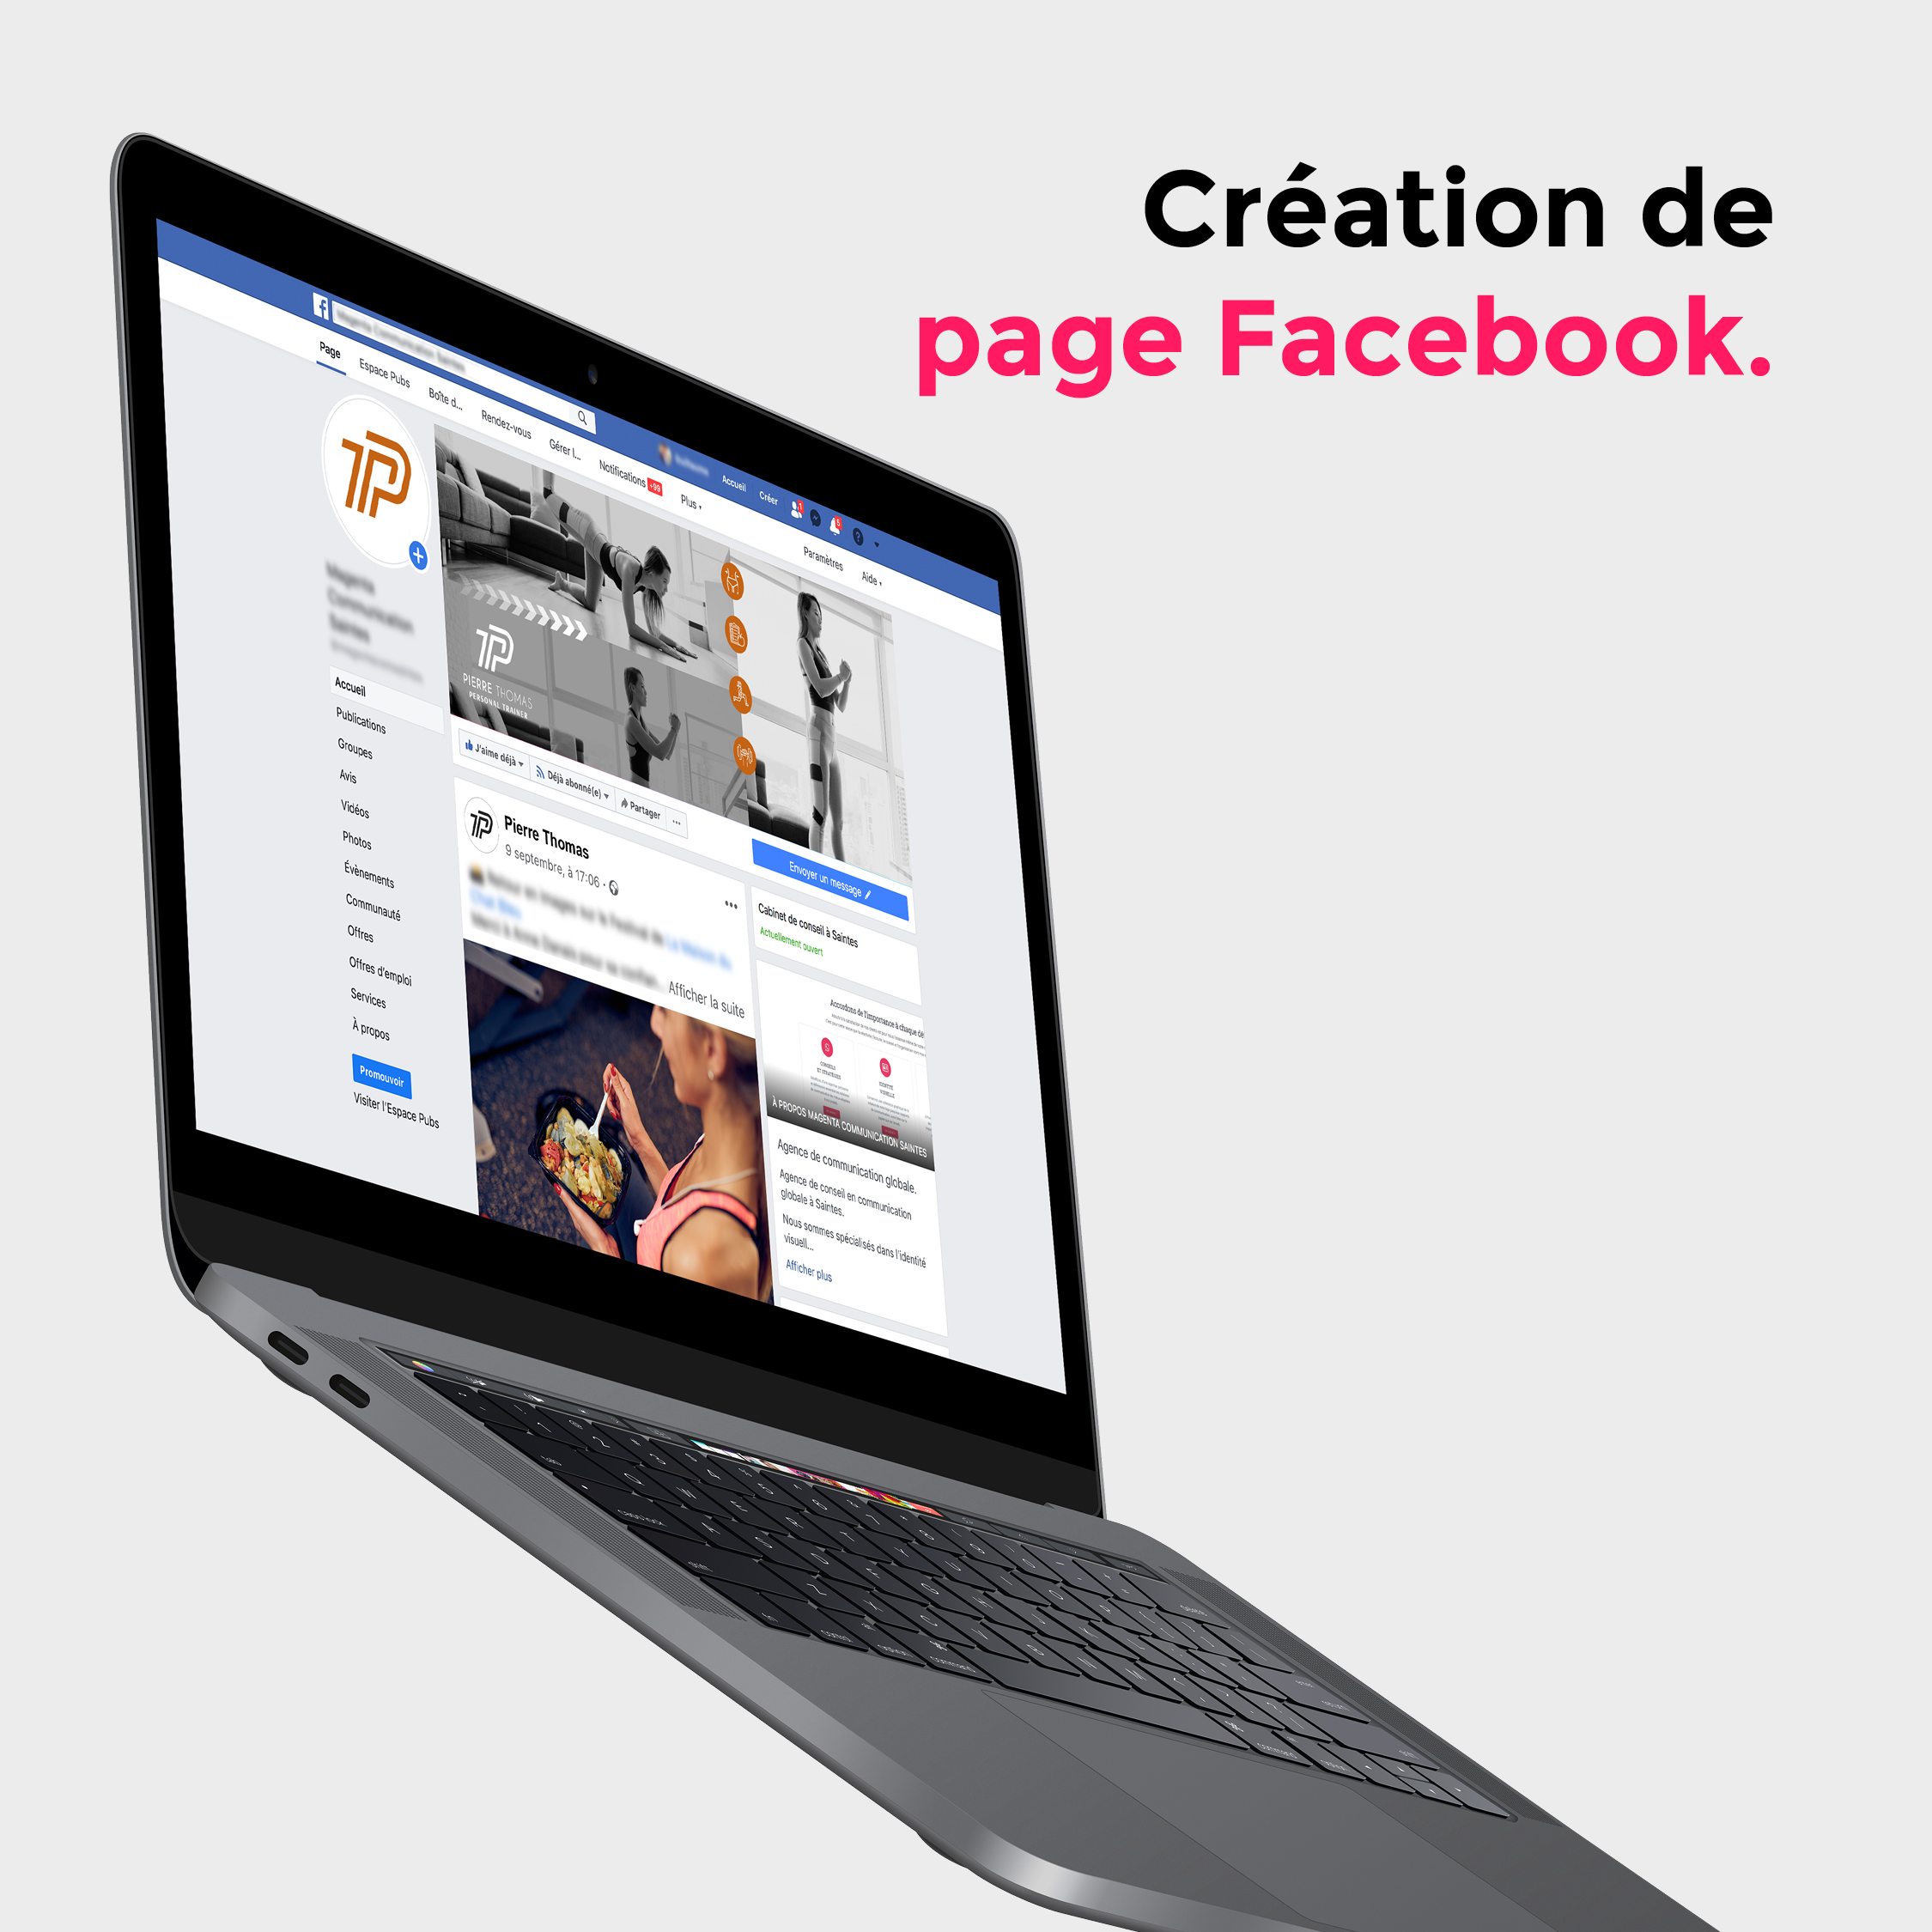 carre-gris-ordinateur-portable-page-facebook-interieur-pierre-thomas